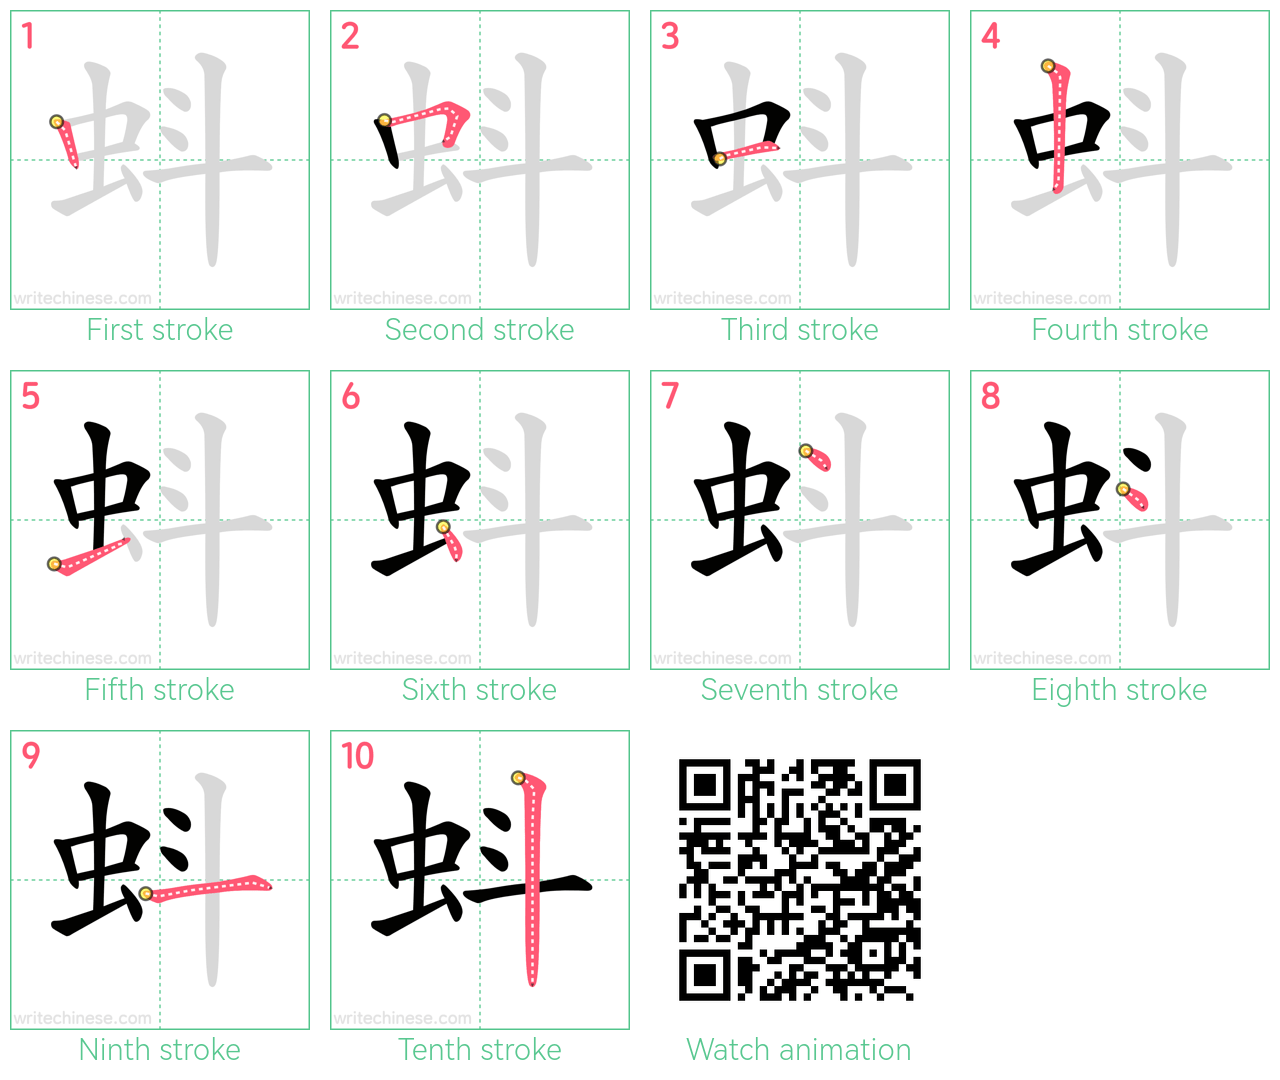 蚪 step-by-step stroke order diagrams